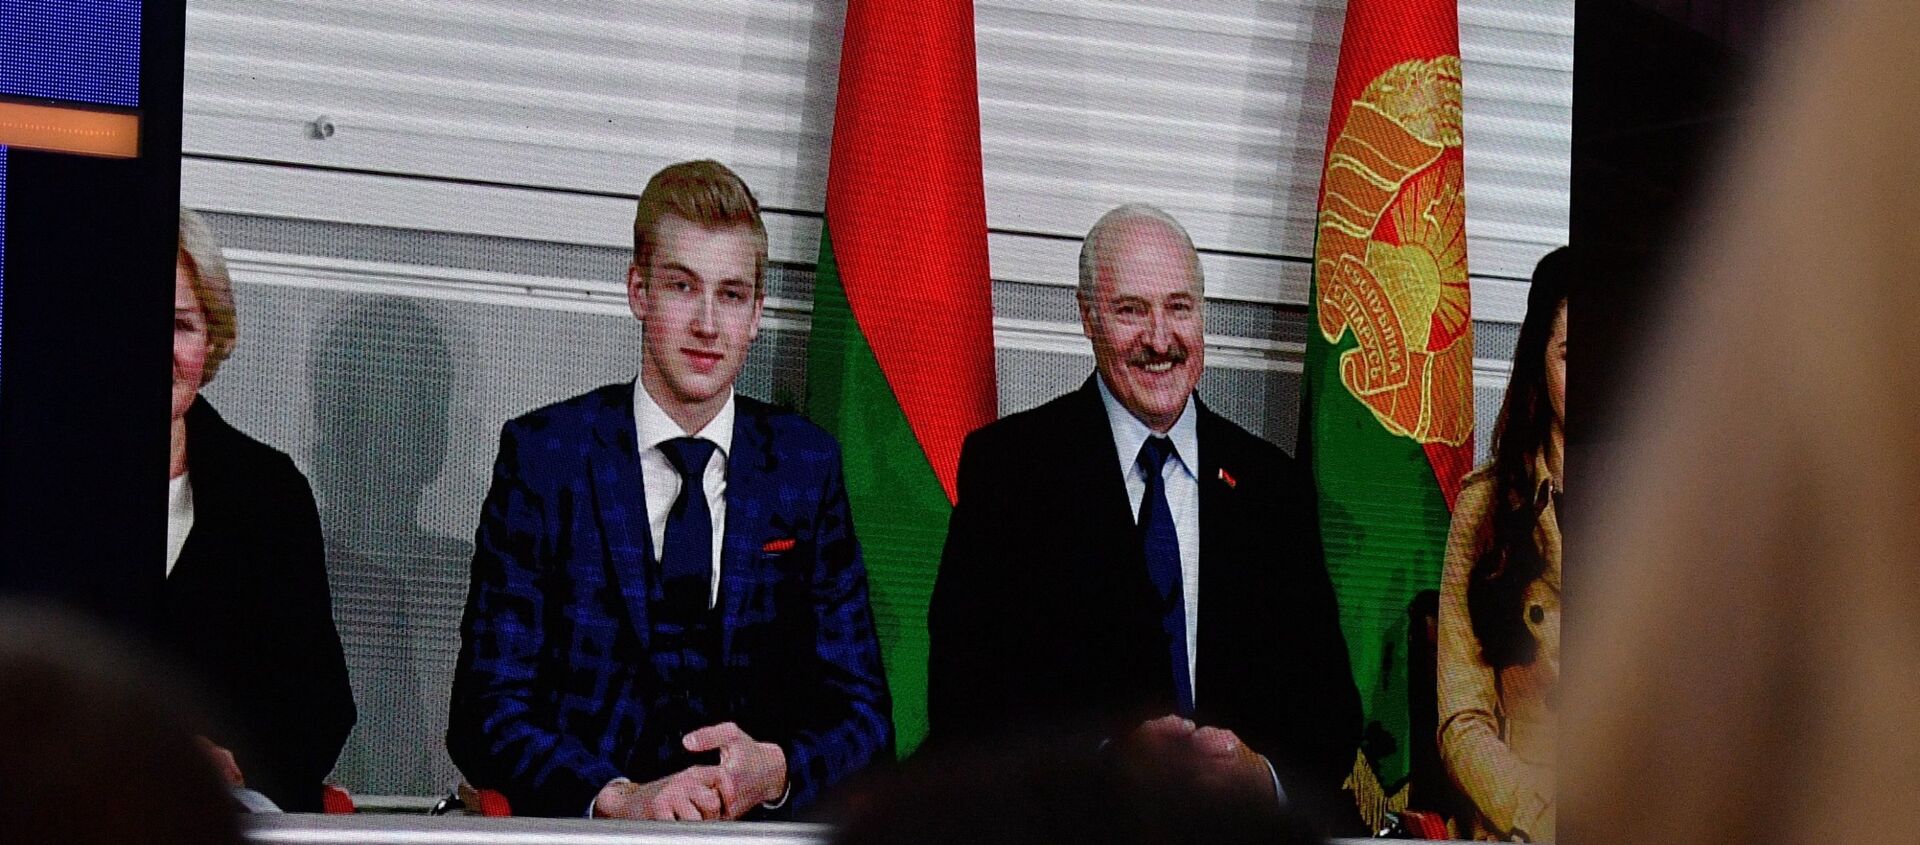 Лукашенко и его младший сын Николай смотрели концерт из ложи, к которой то и дело обращались взгляды зрителей - Sputnik Беларусь, 1920, 29.01.2021